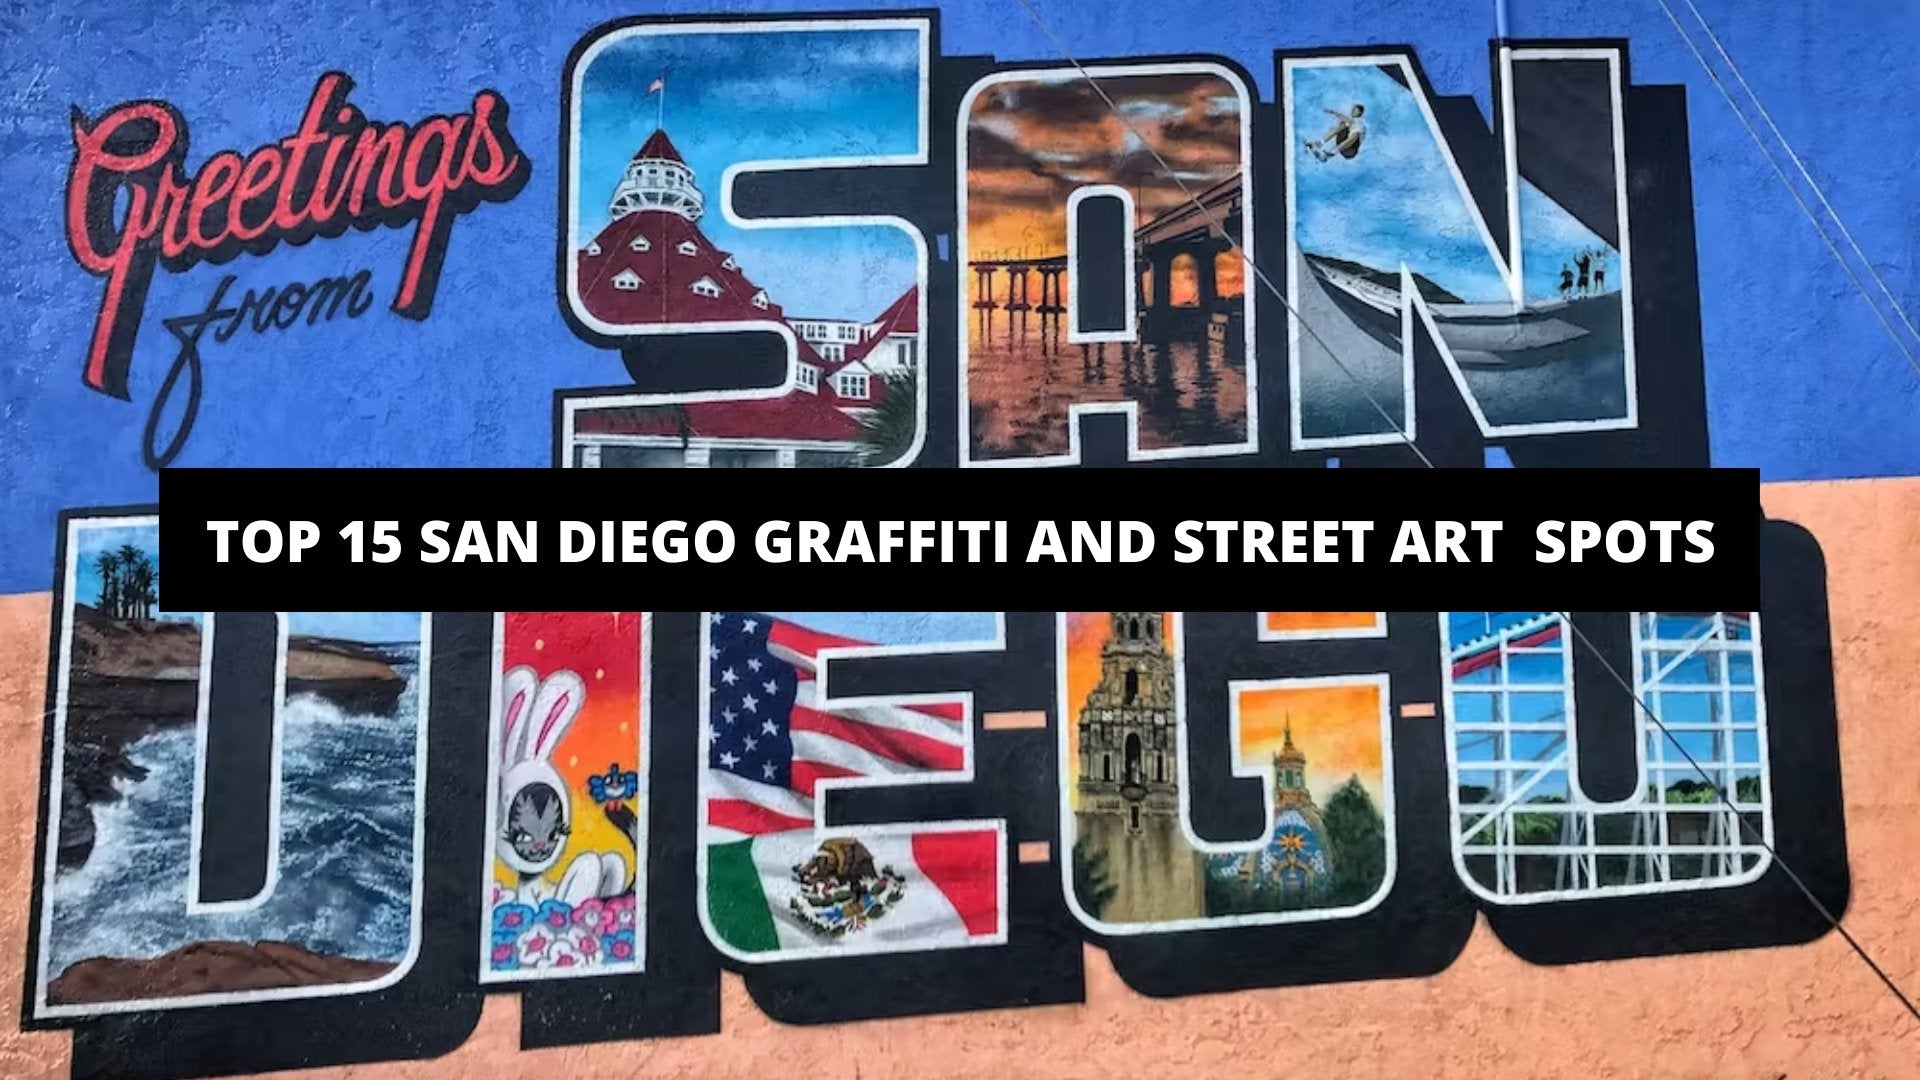 Top 15 San Diego Graffiti and Street Art Spots - The Trendy Art